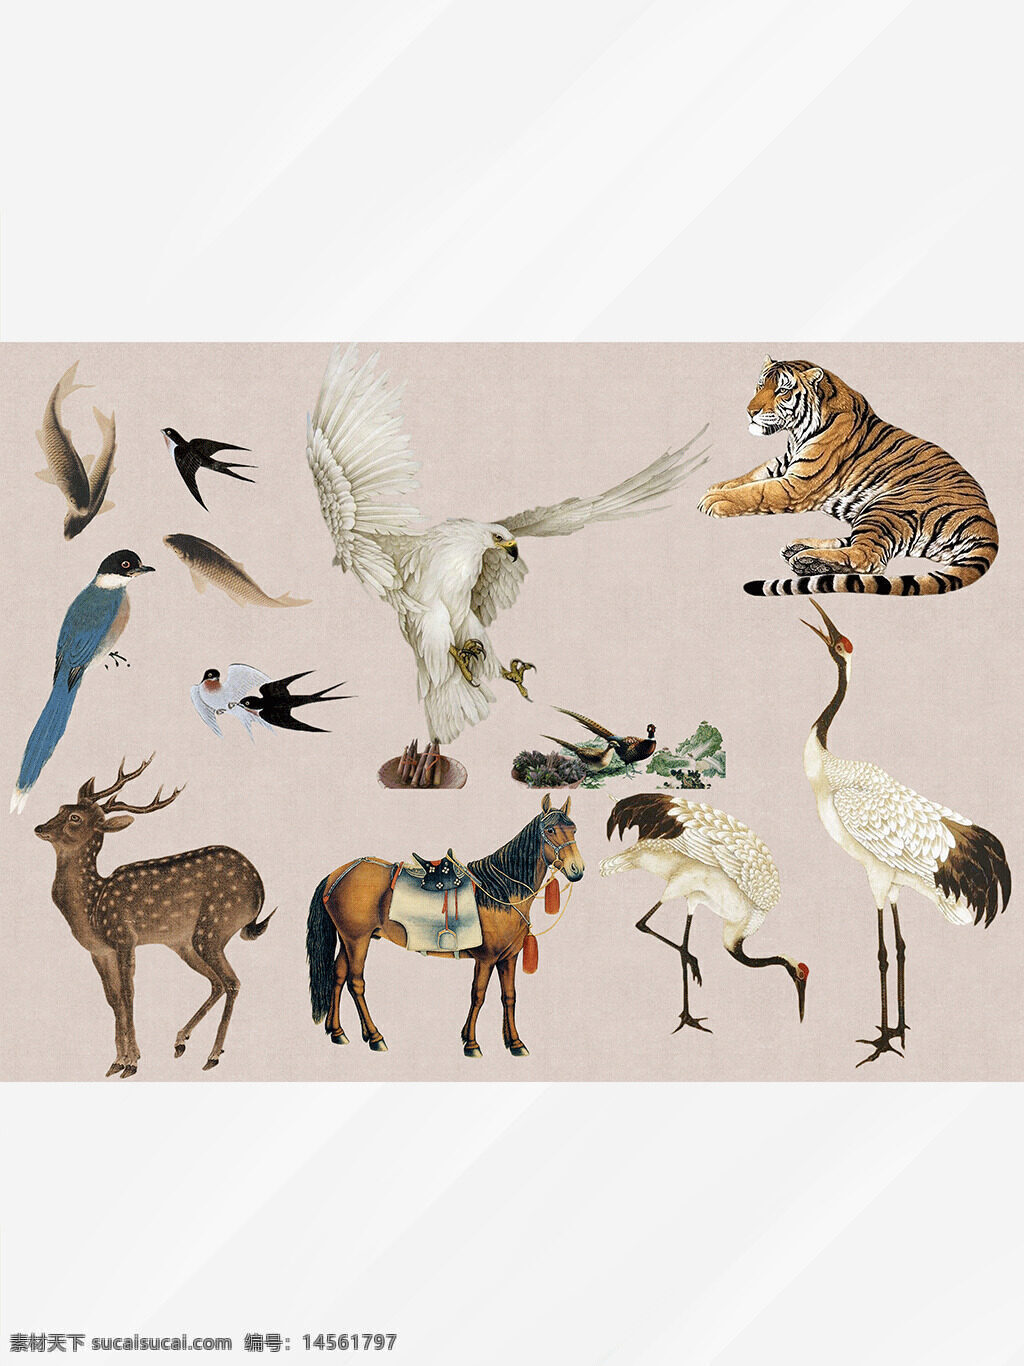 工笔画 工笔画鸟 工笔 古代 仙鹤 风景 装饰画 字画 动物 设计